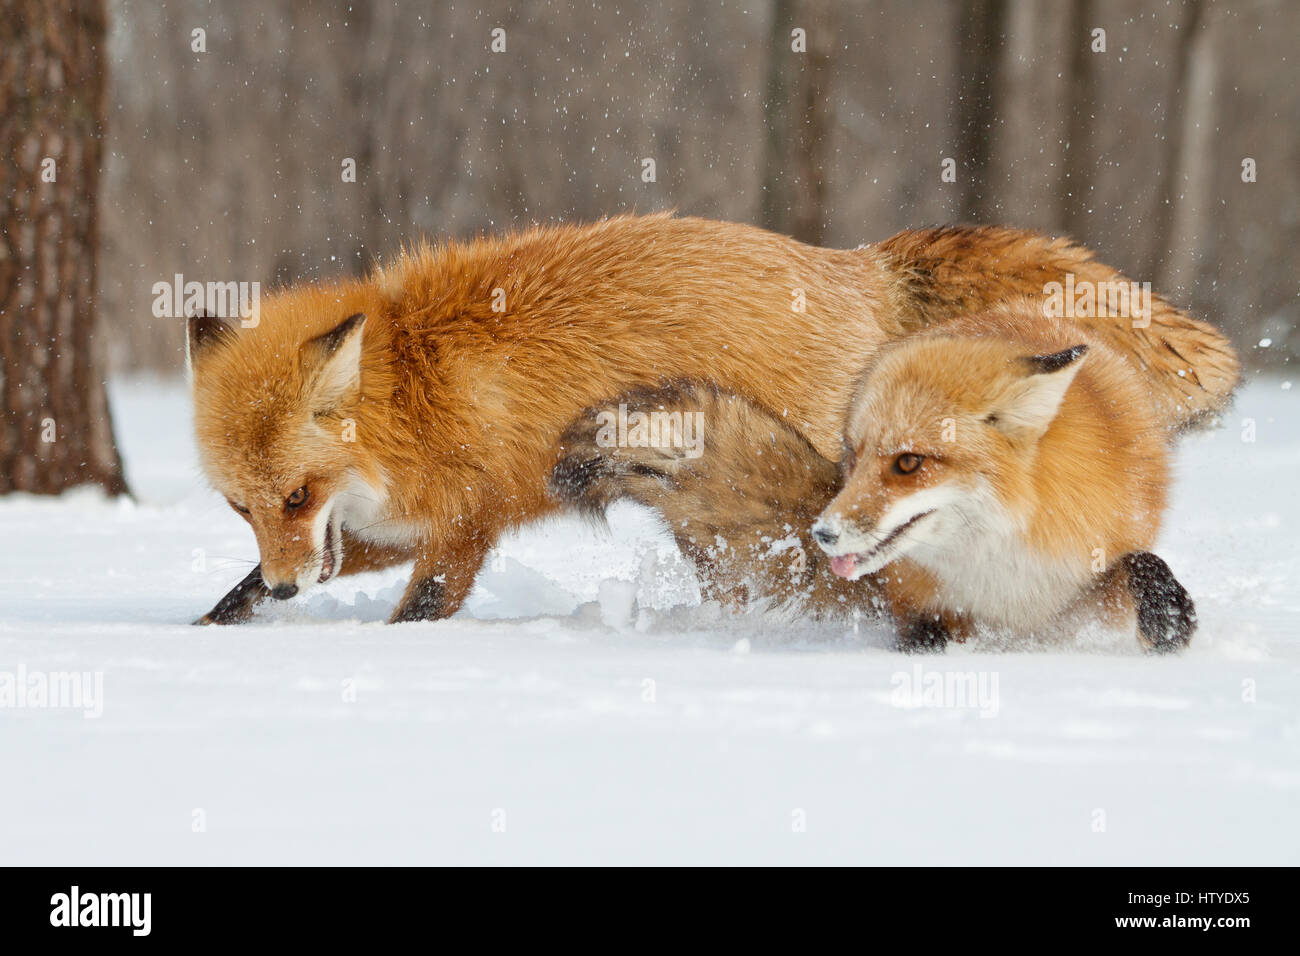 Deux renards combats dans la neige, Montréal, Canada Banque D'Images